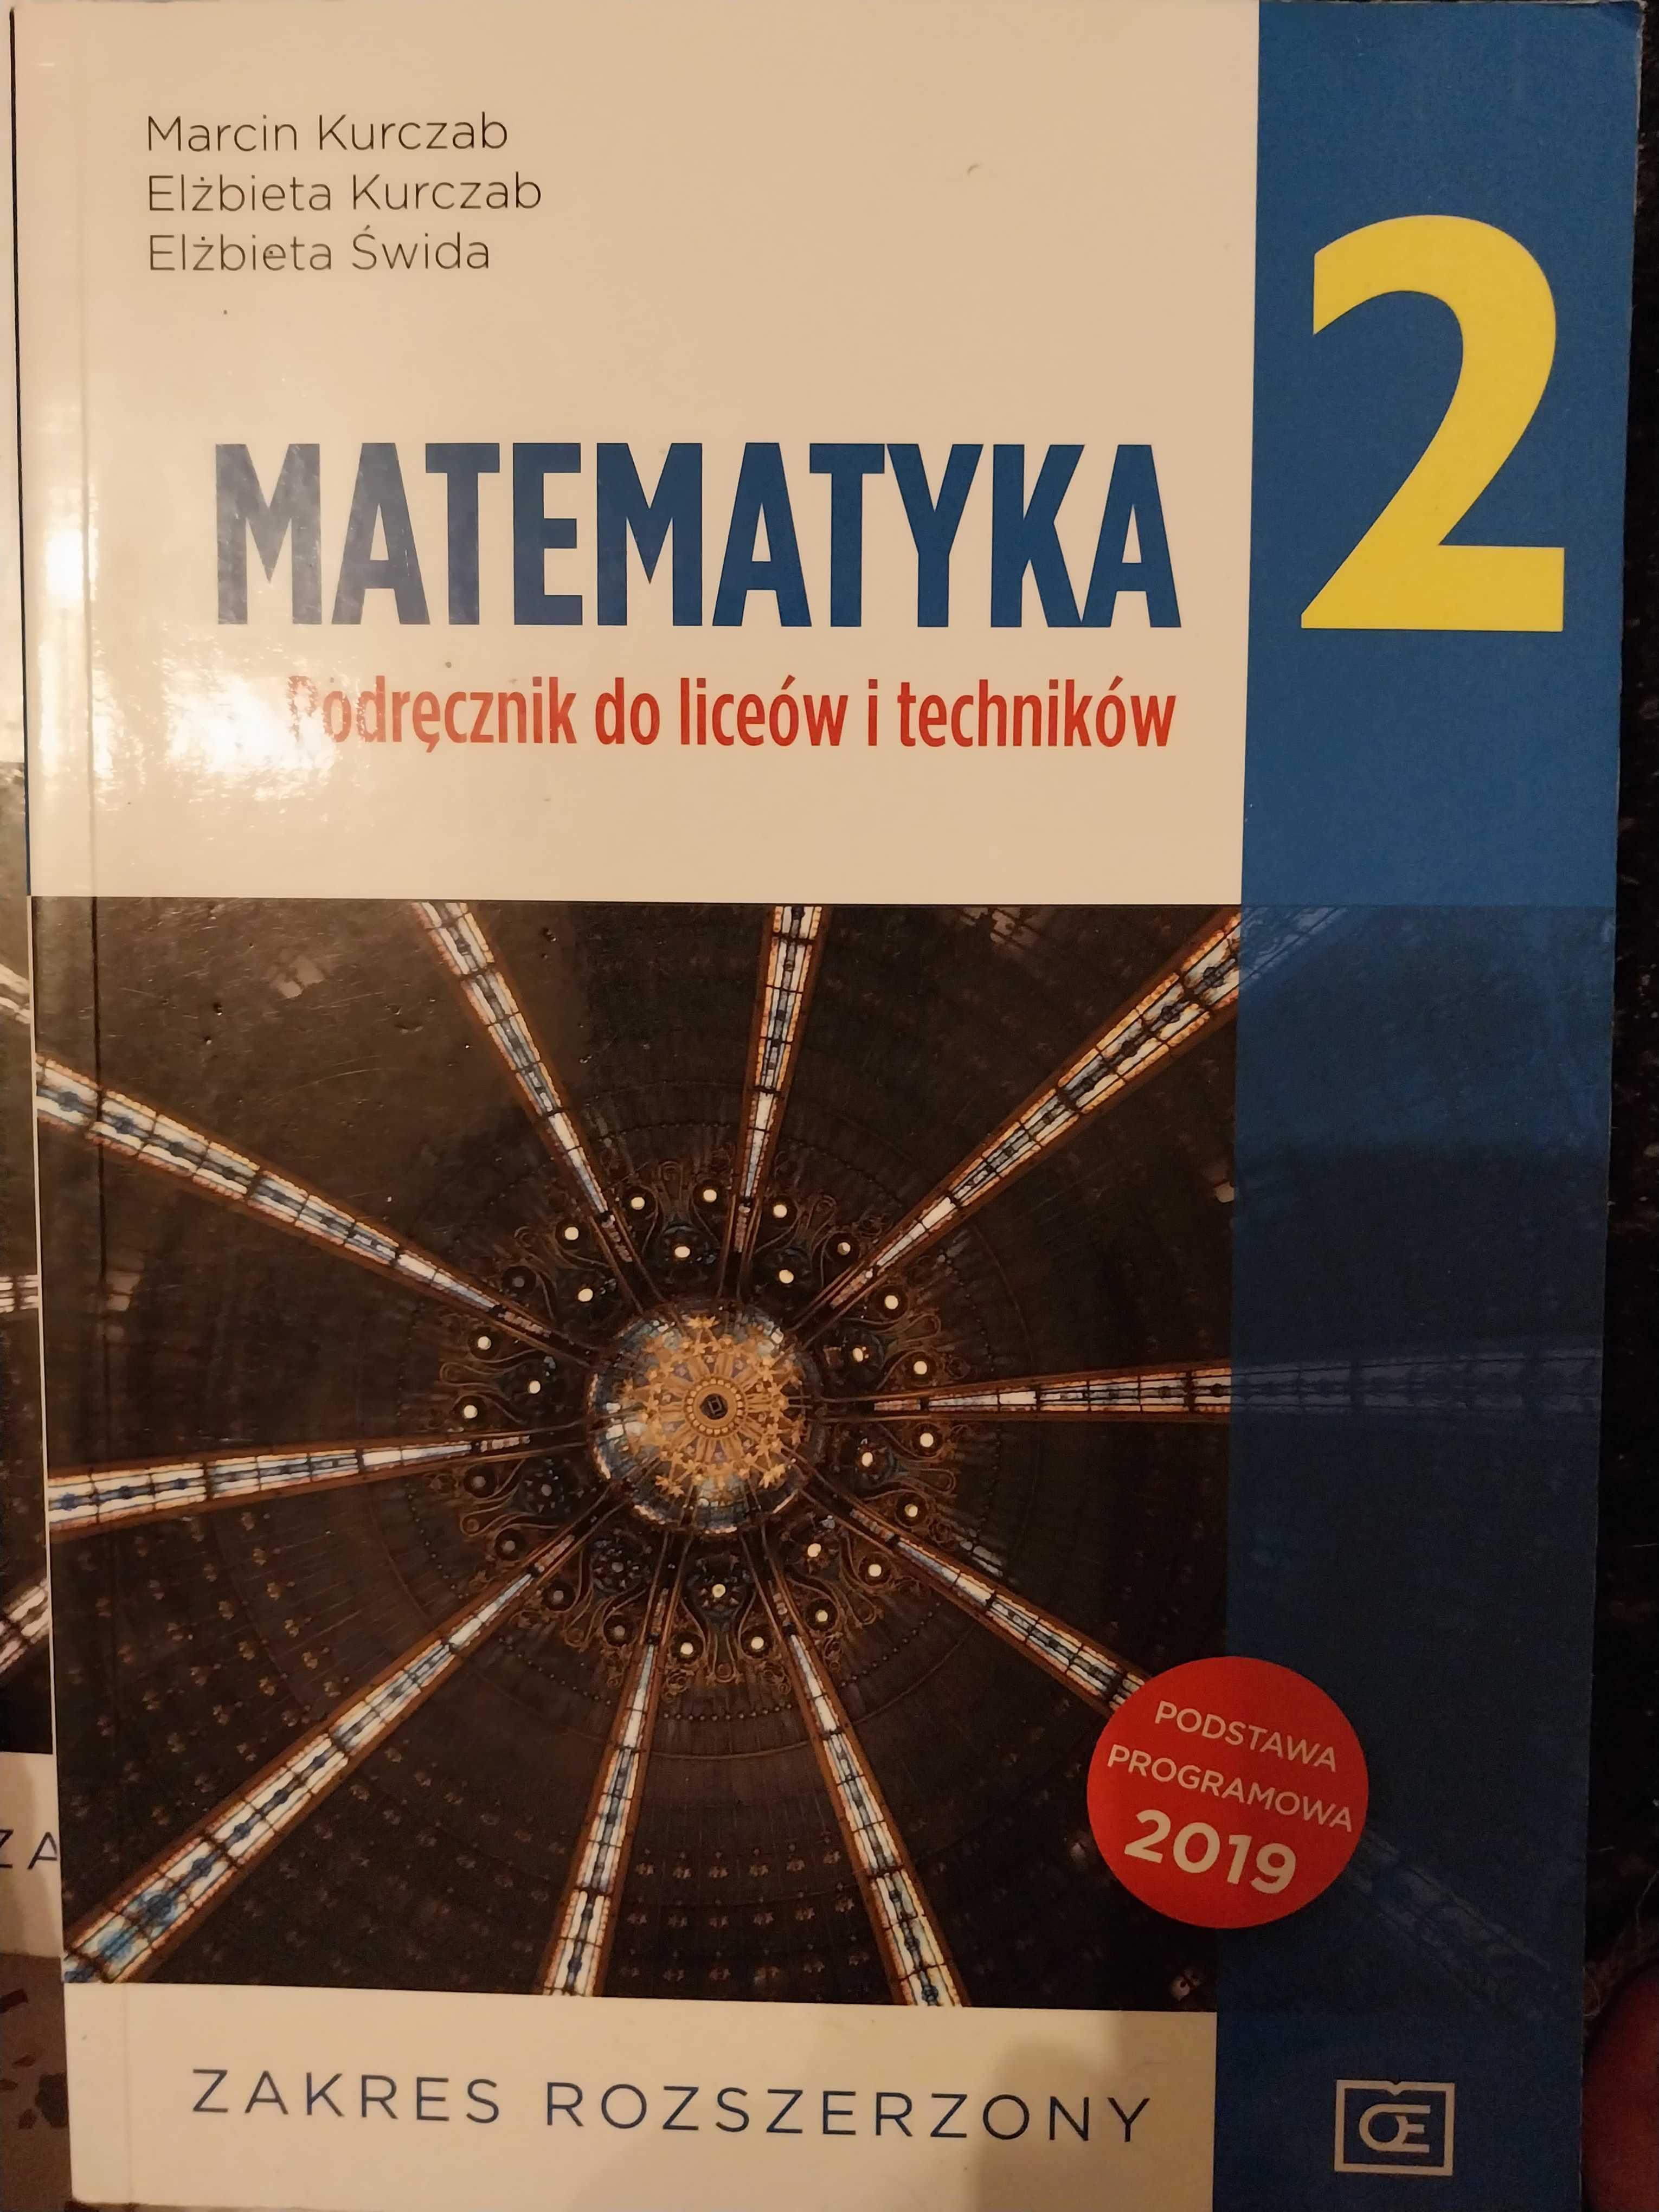 Podręcznik do matematyki 2 plus zbiór zadań